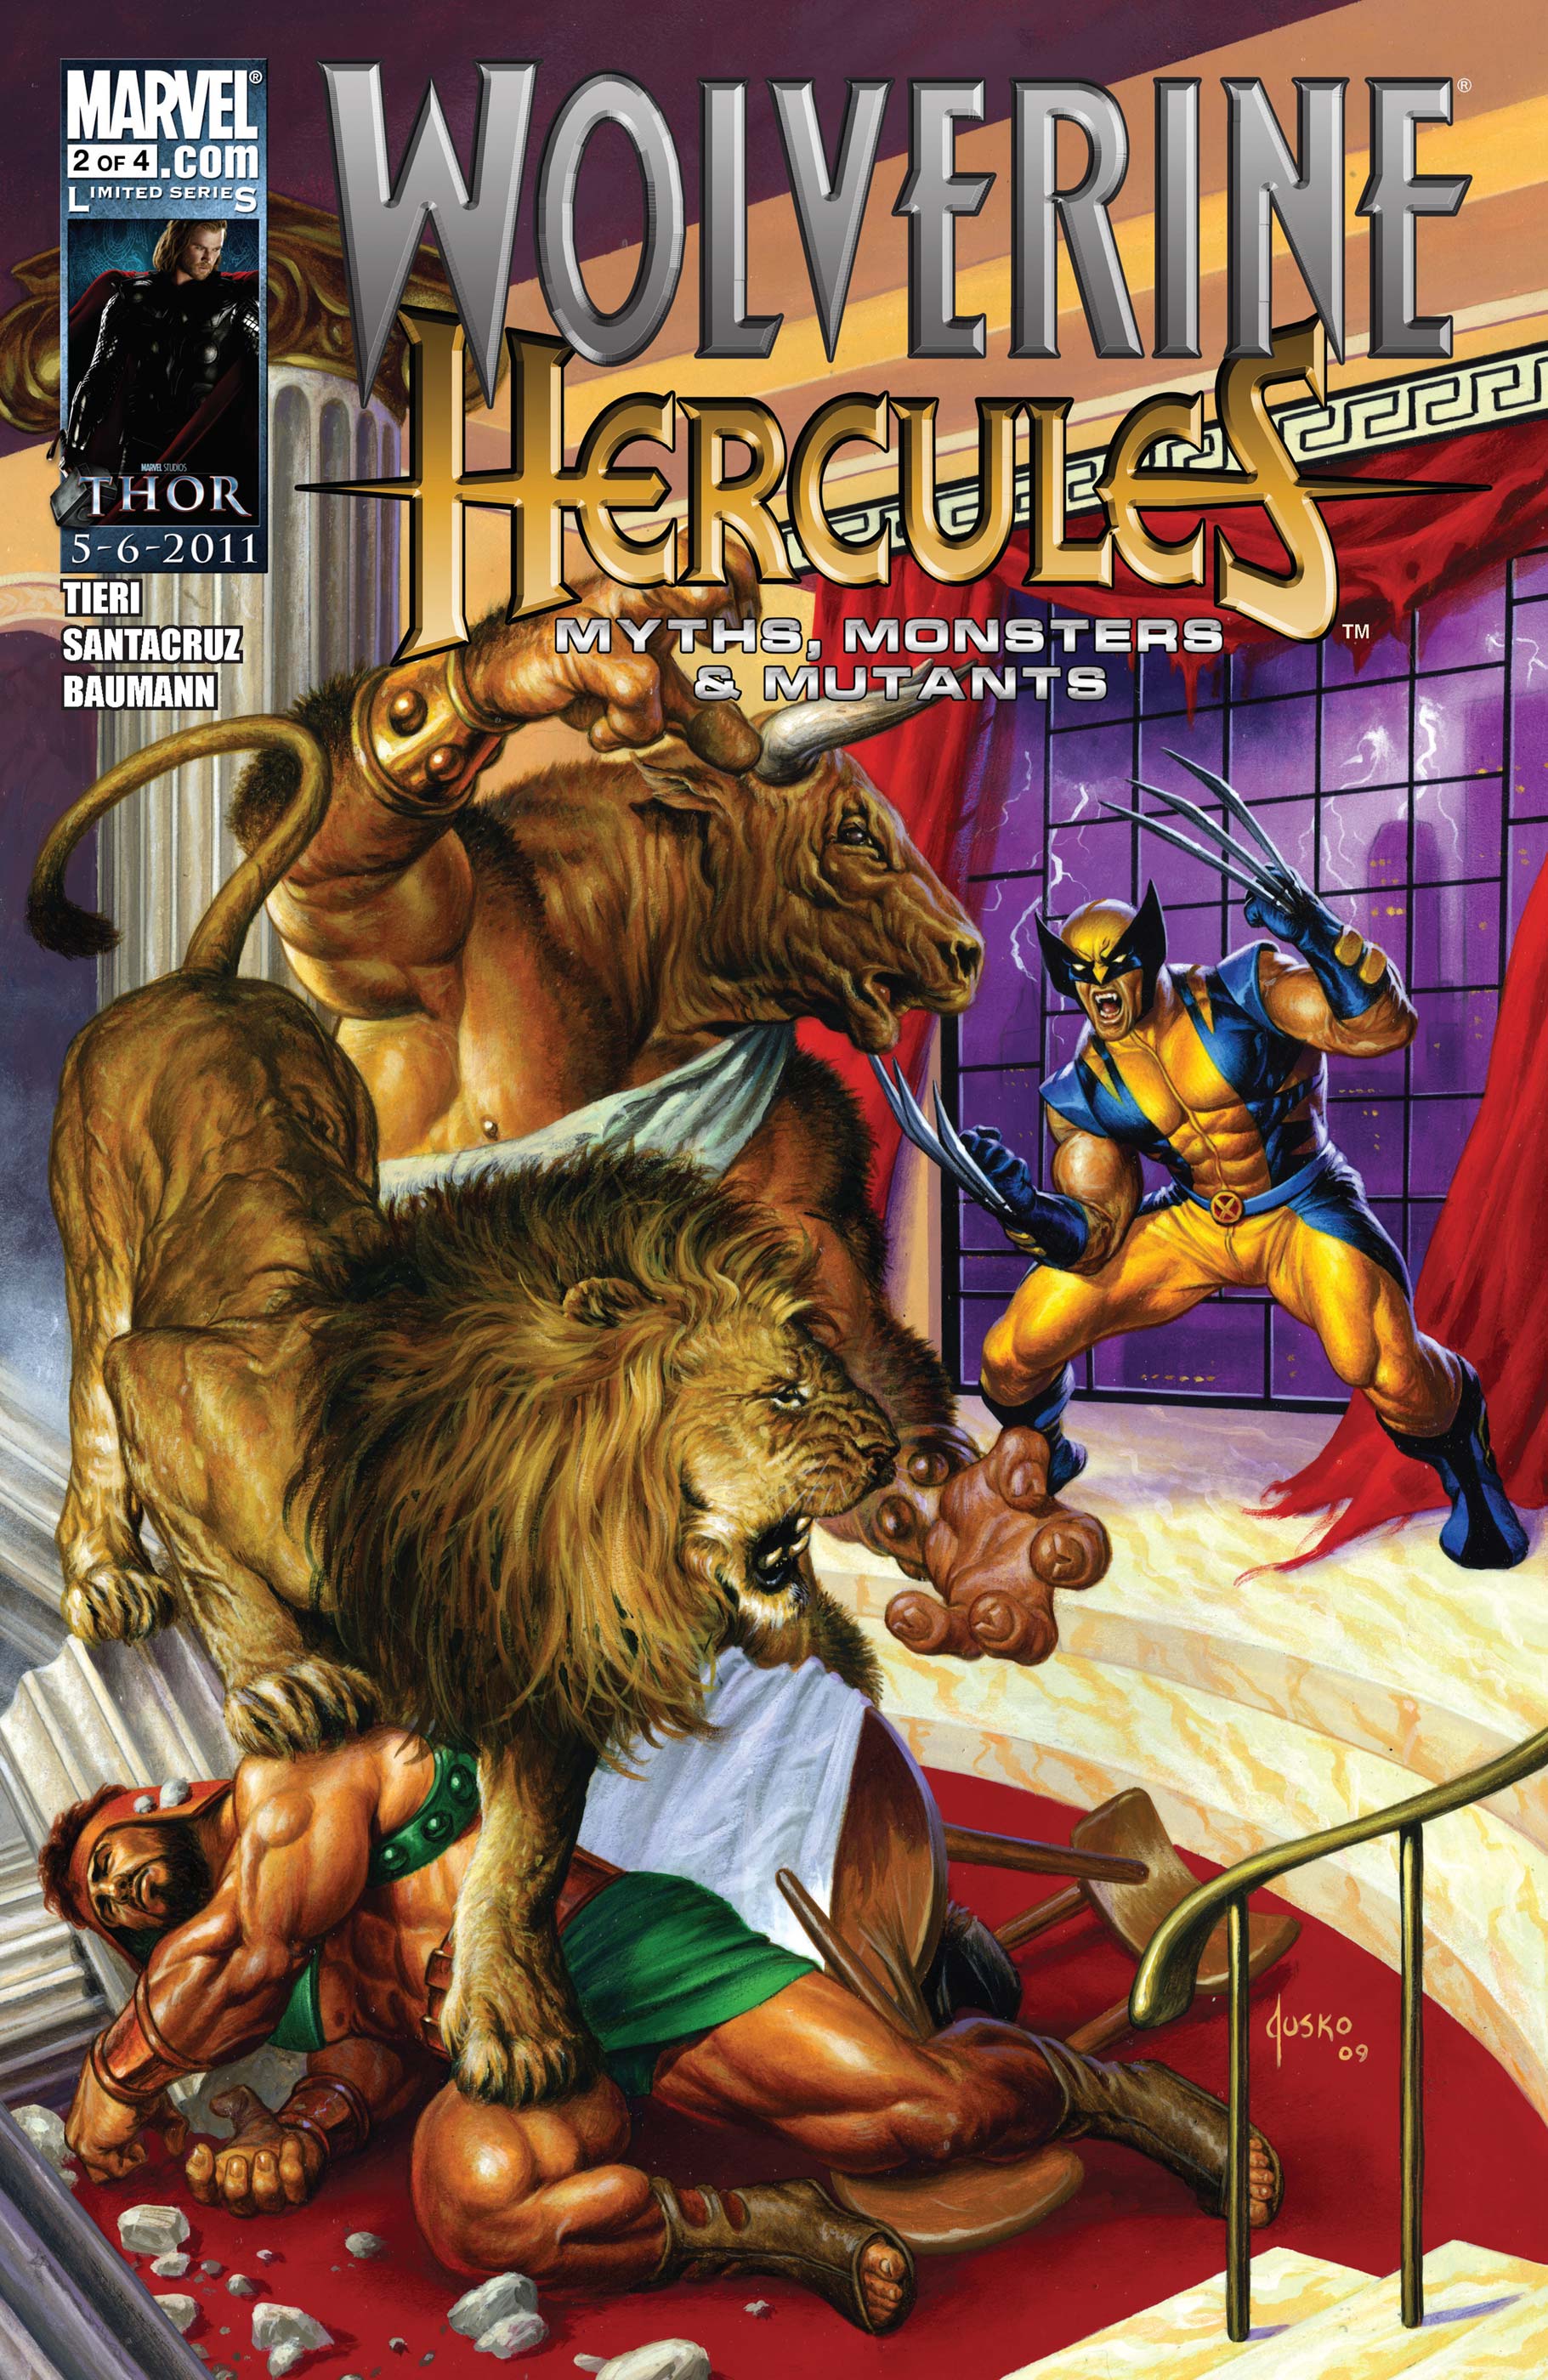 Wolverine/Hercules: Myths, Monsters & Mutants (2010) #2